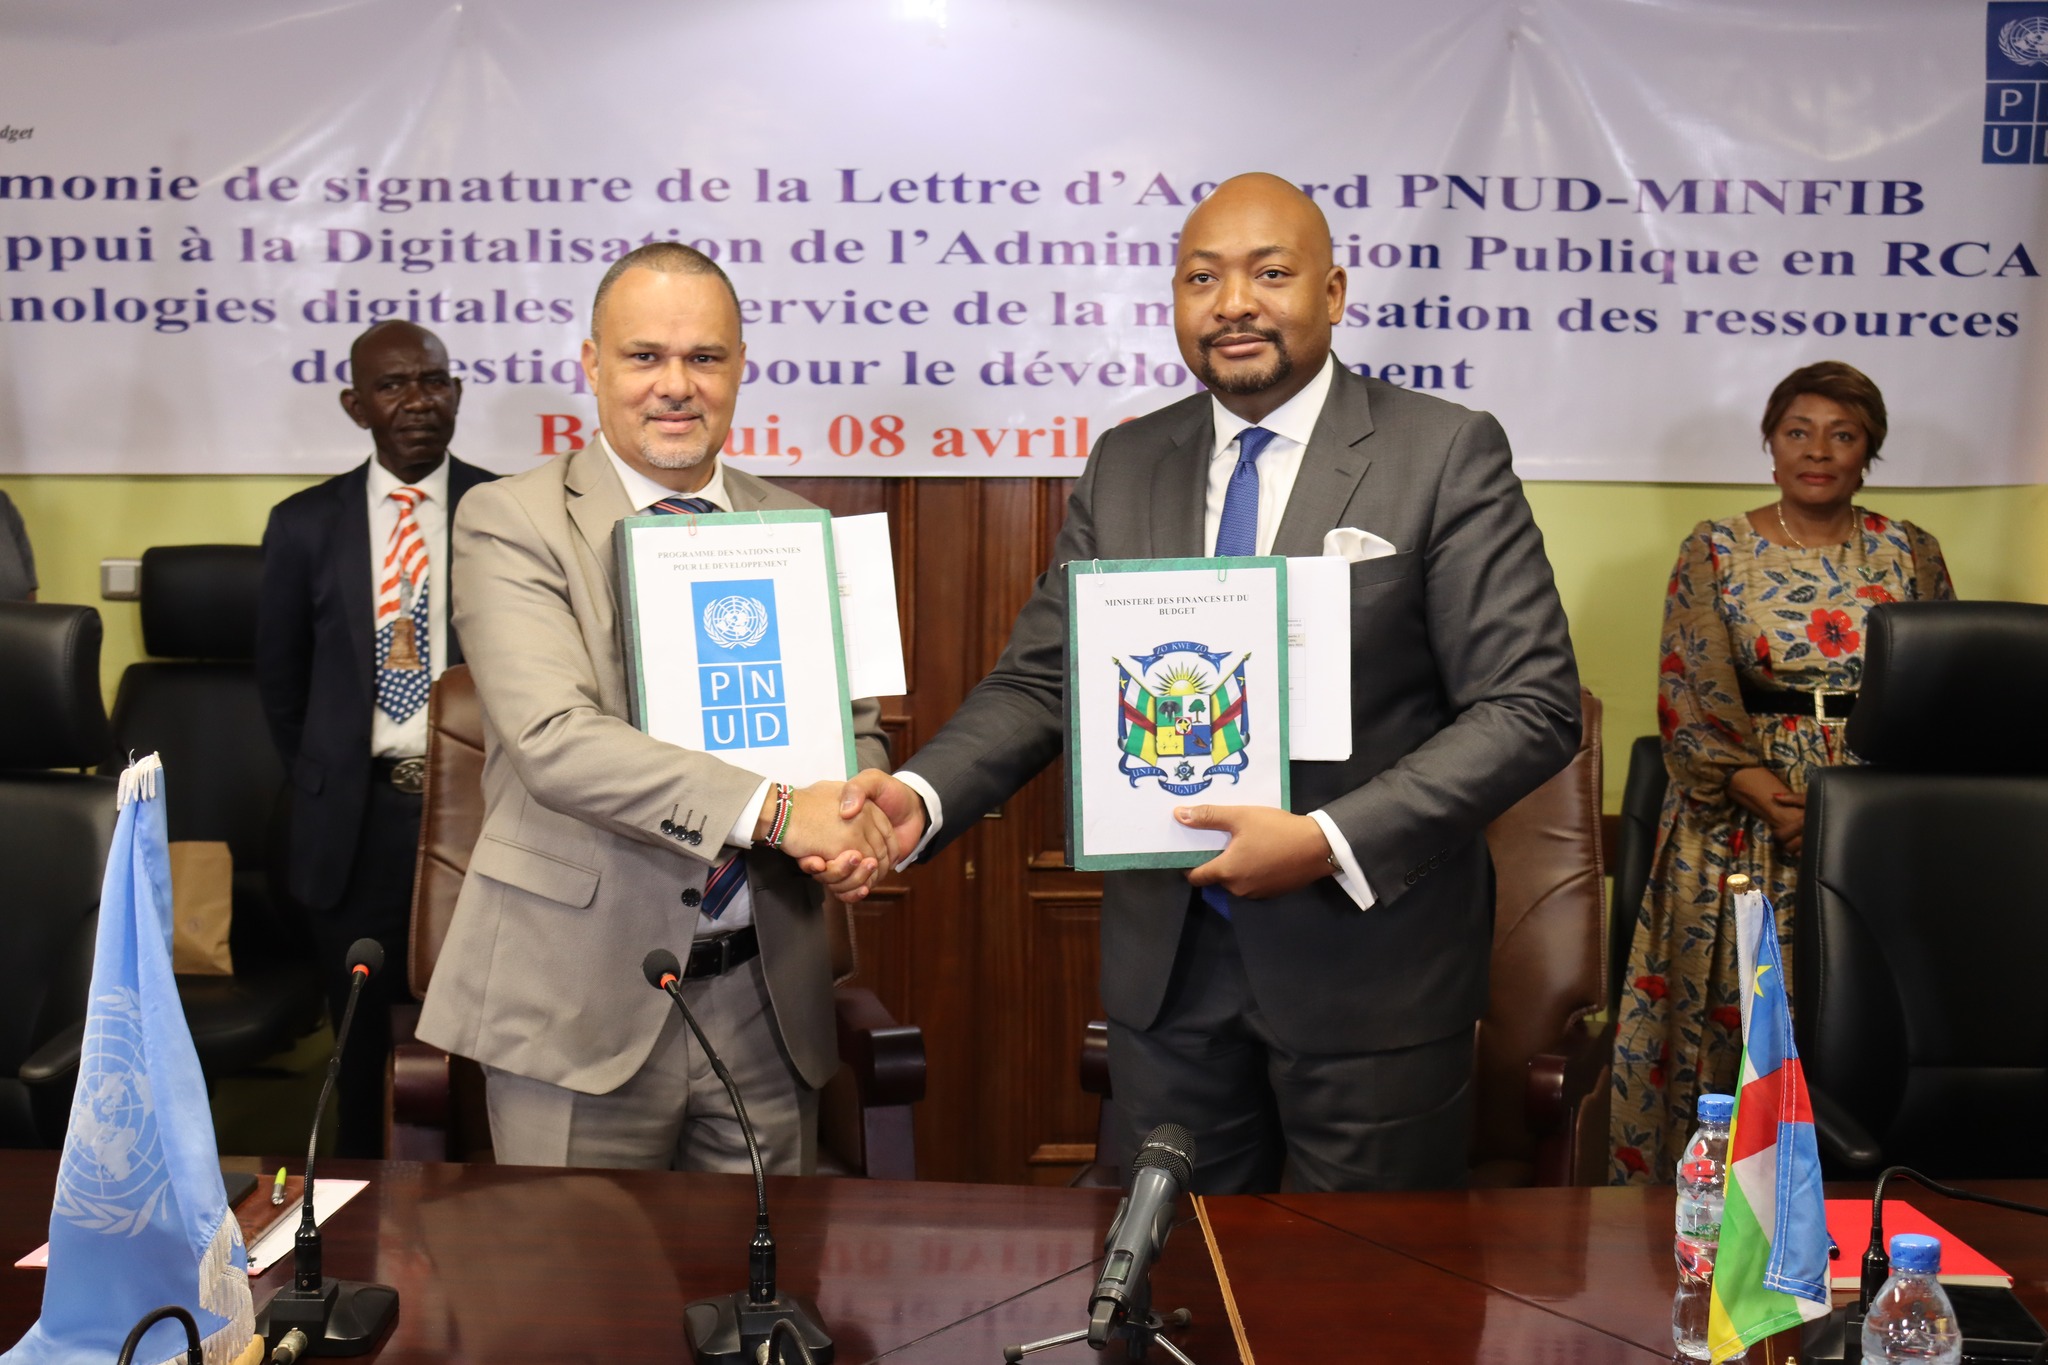 Centrafrique : le PNUD accorde plus d’un milliard FCFA au gouvernement pour la phase 2 de digitalisation de l’administration publique